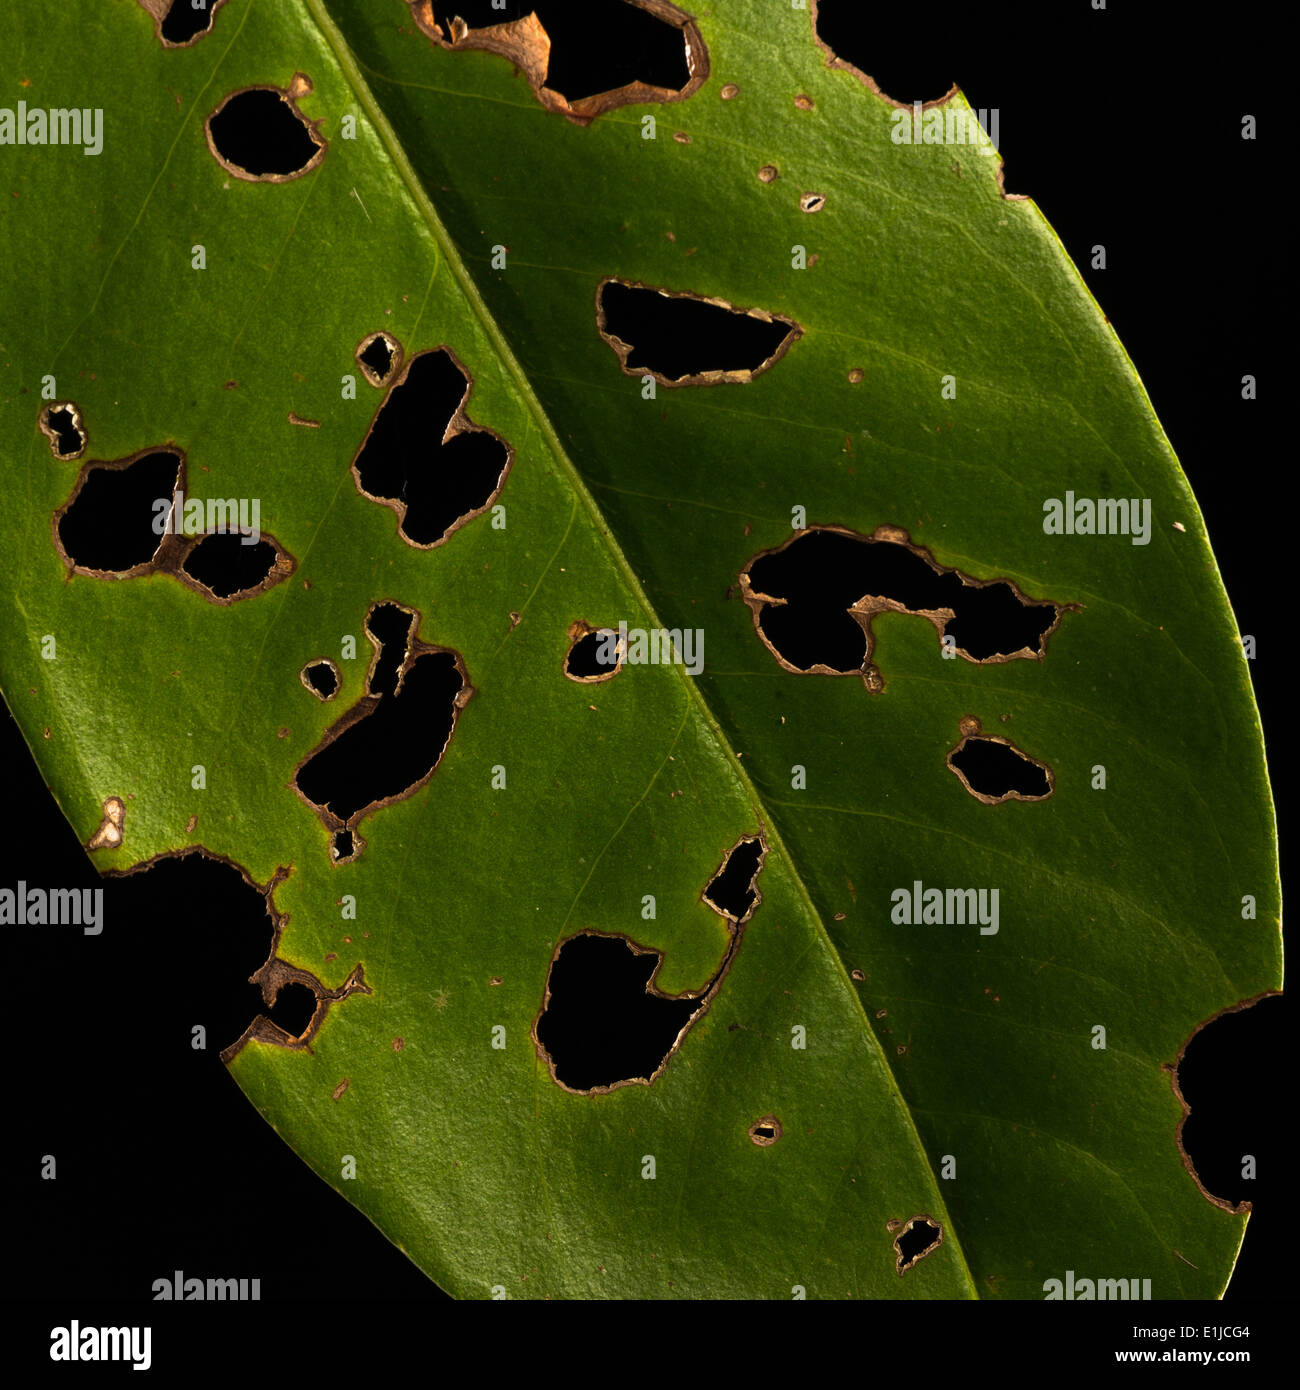 Ein grünes Blatt durch Insekten beschädigt Stockfoto